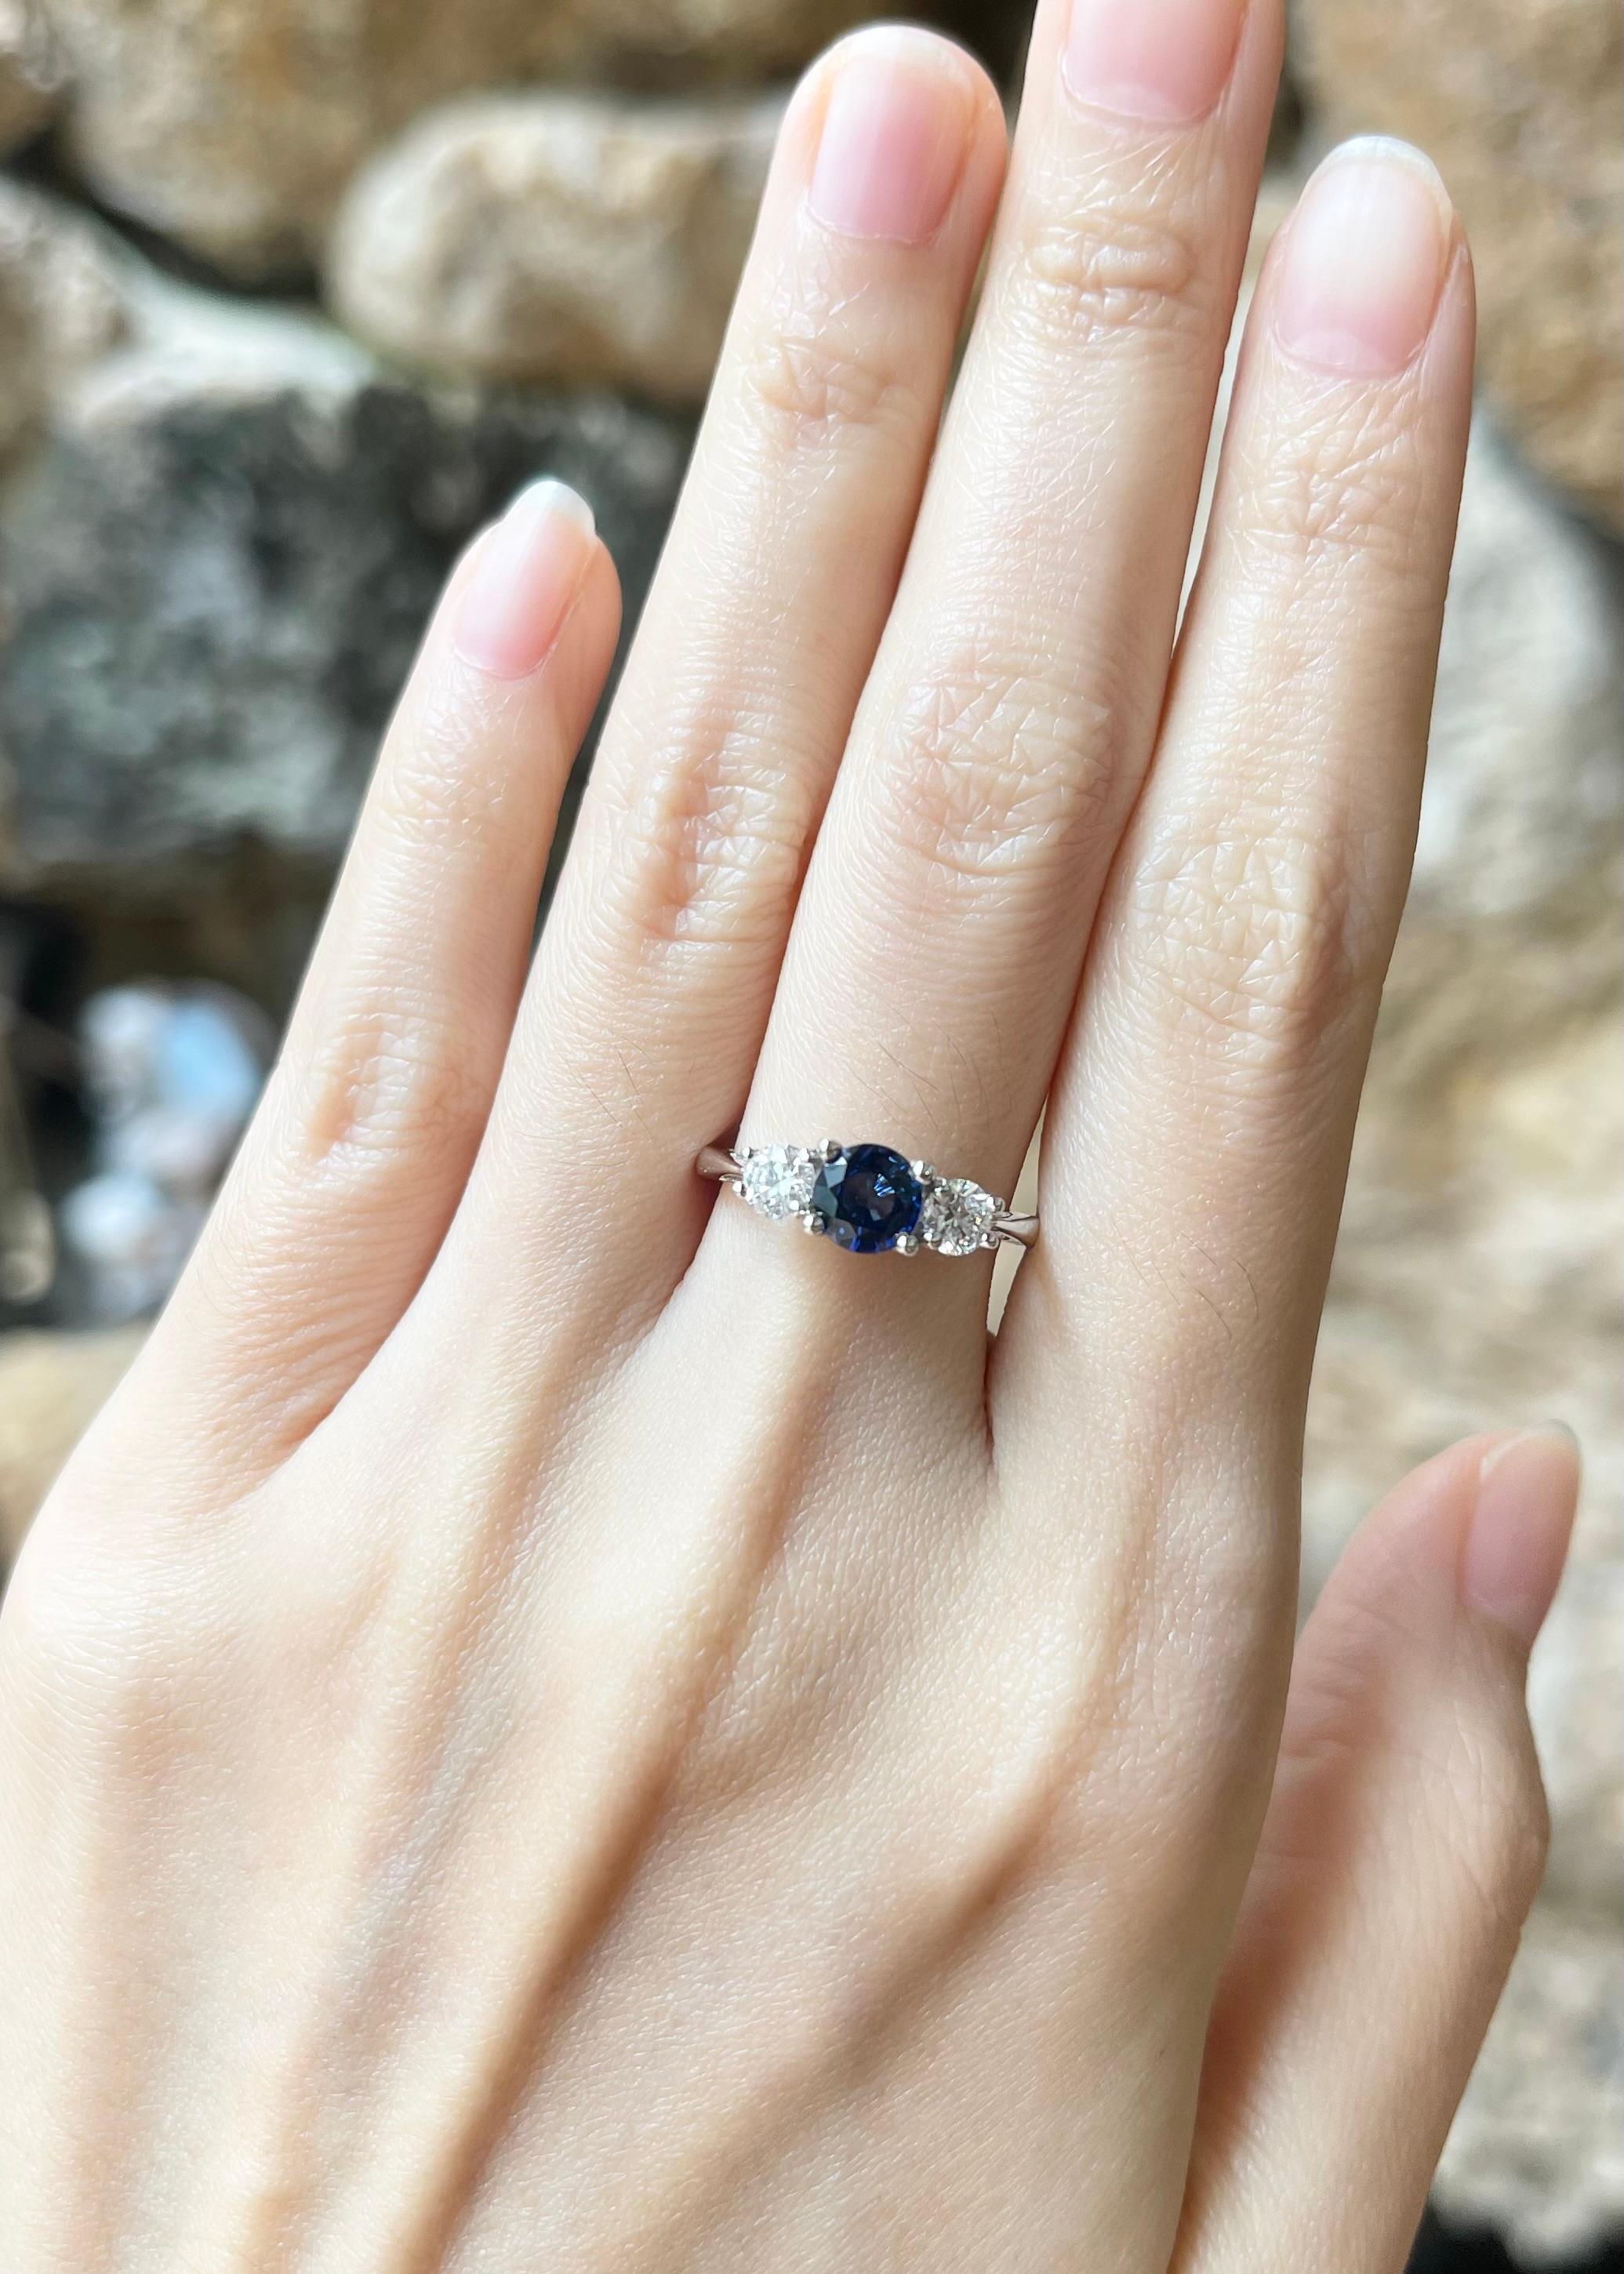 Ring mit blauem Saphir (0,94 Karat) und Diamant (0,49 Karat) in einer Fassung aus 18 Karat Weißgold

Breite:  1,4 cm 
Länge: 0.5 cm
Ringgröße: 52
Gesamtgewicht: 3,38 Gramm

